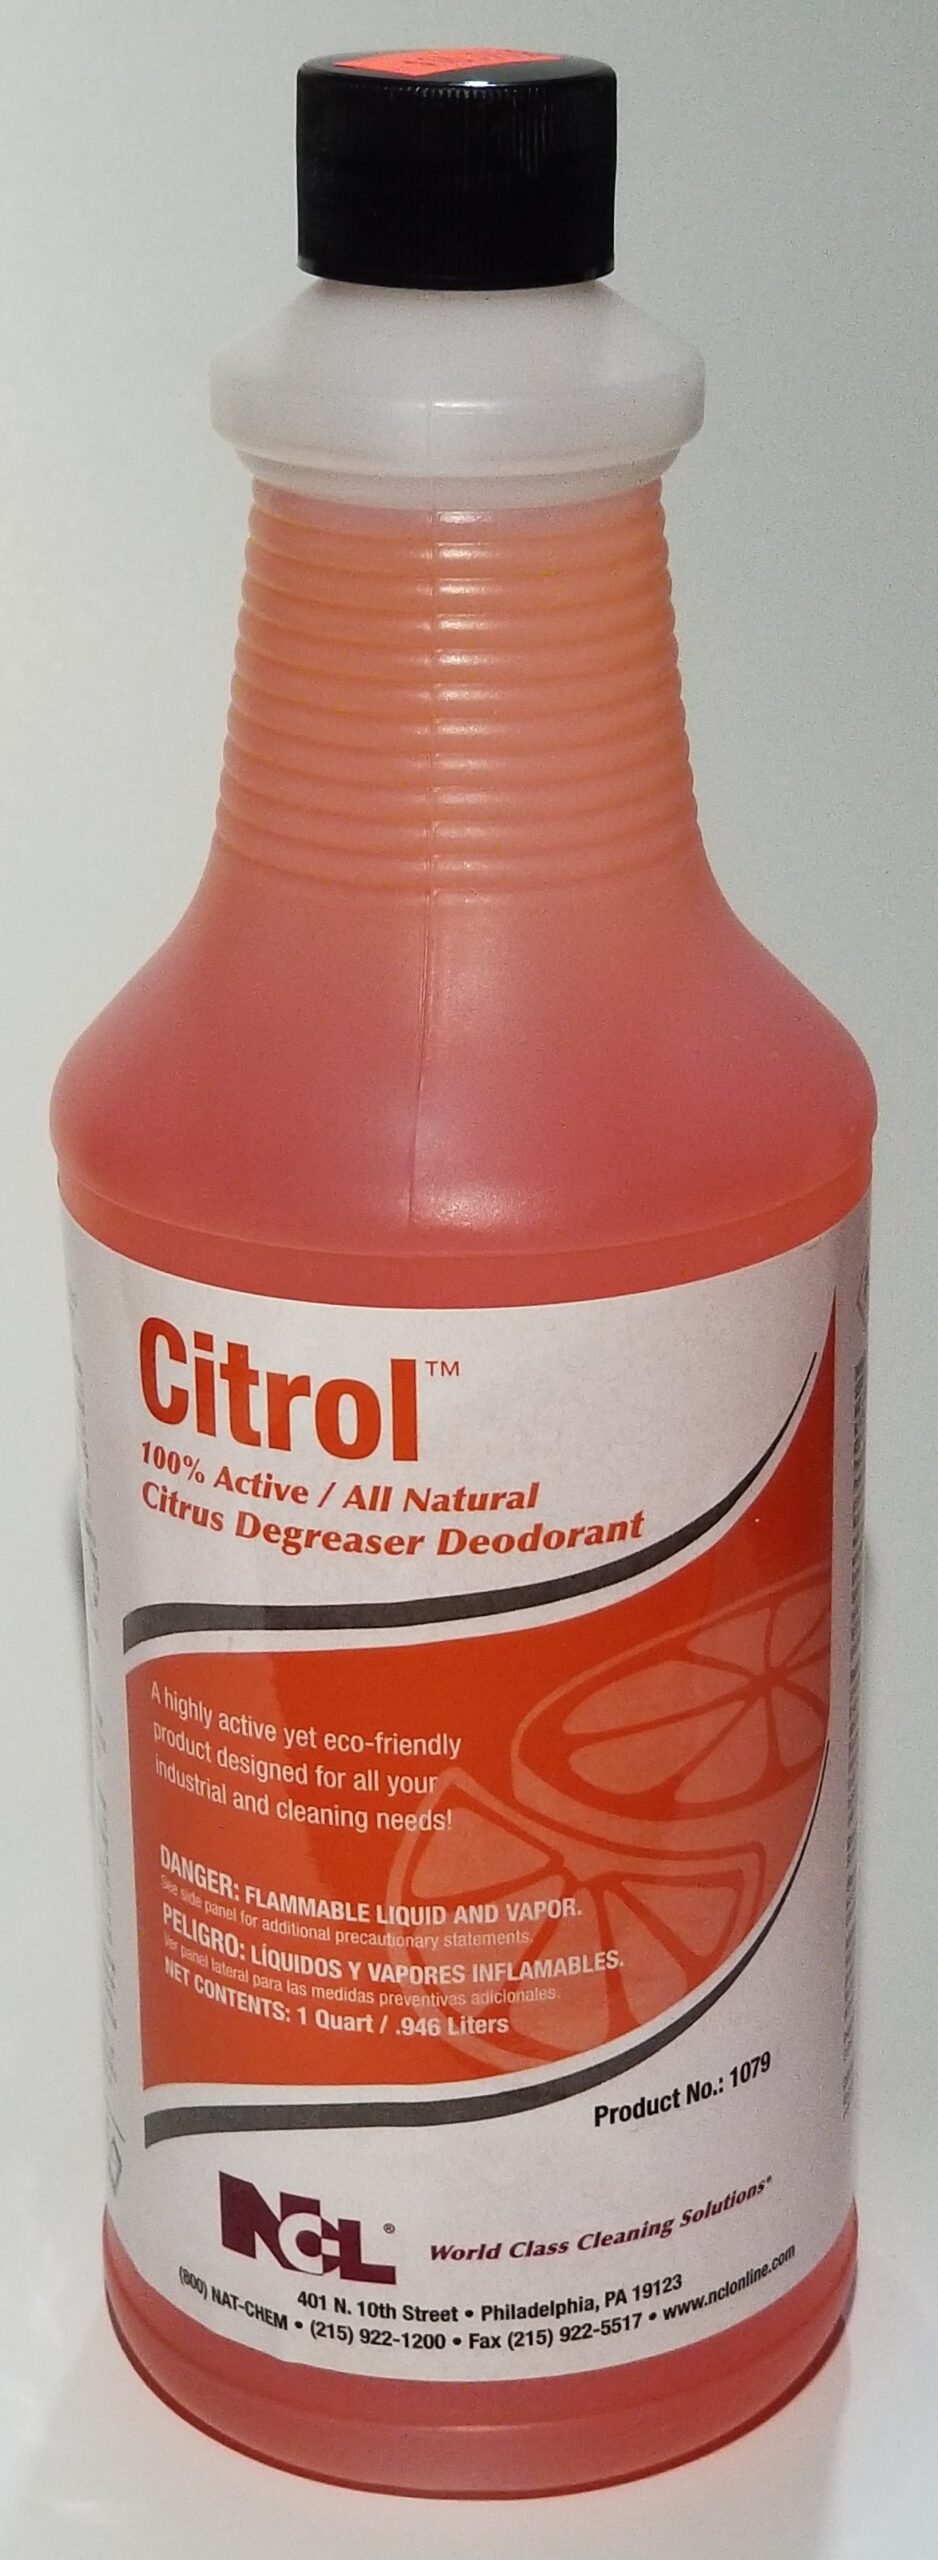 Citrol Citrus Degreaser Deodorant Qt